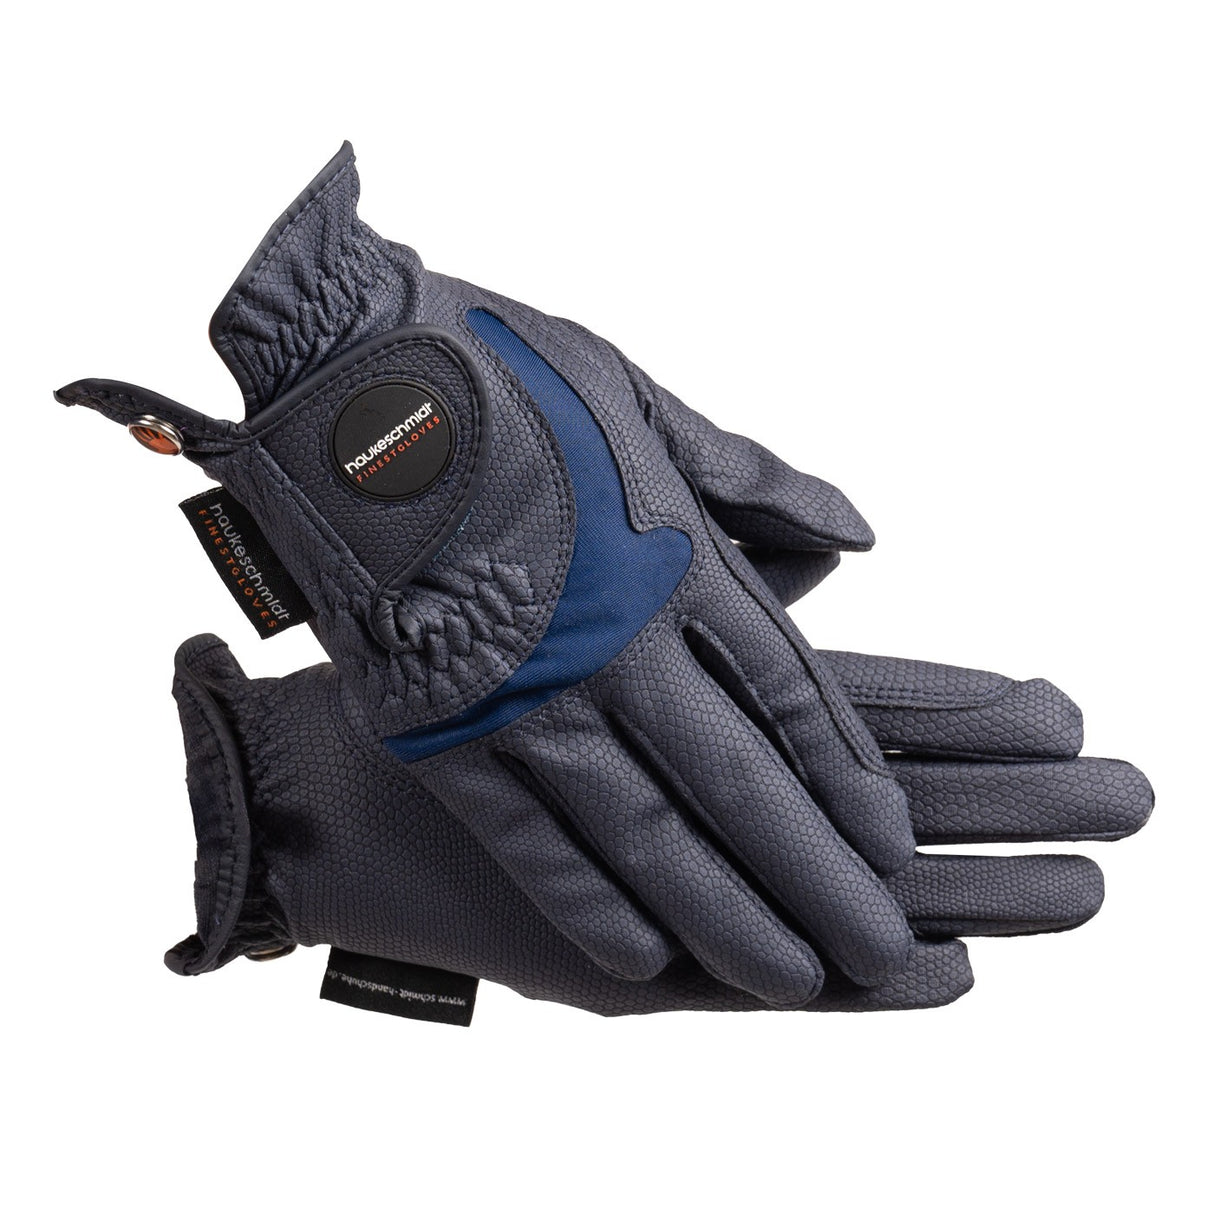 Haukeschmidt A Touch of Summer Gloves